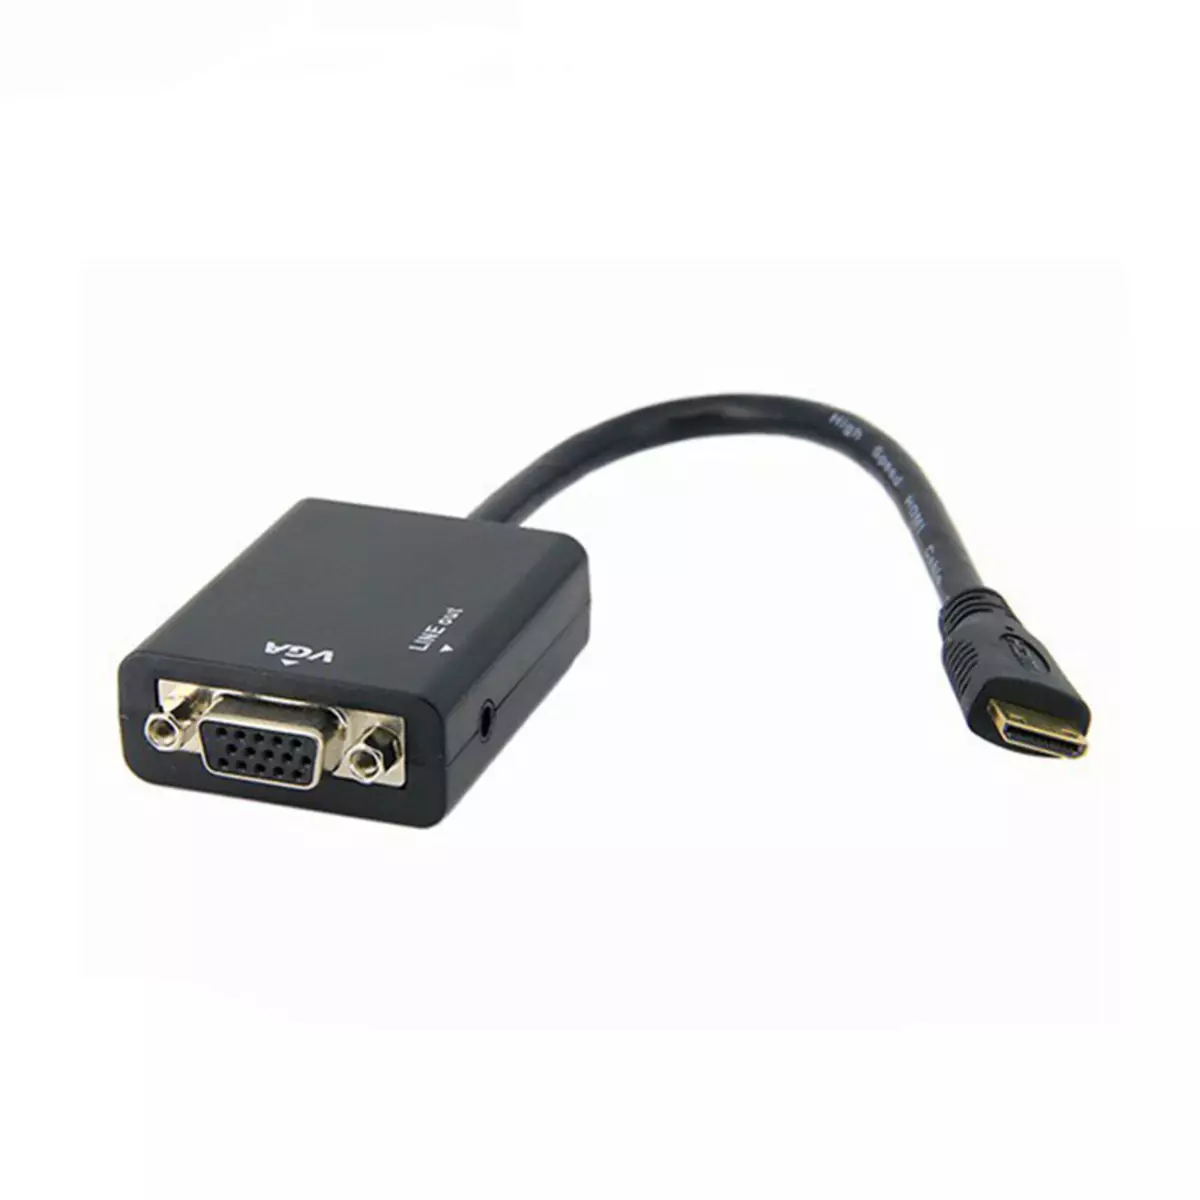 HDMI-VGA అడాప్టర్